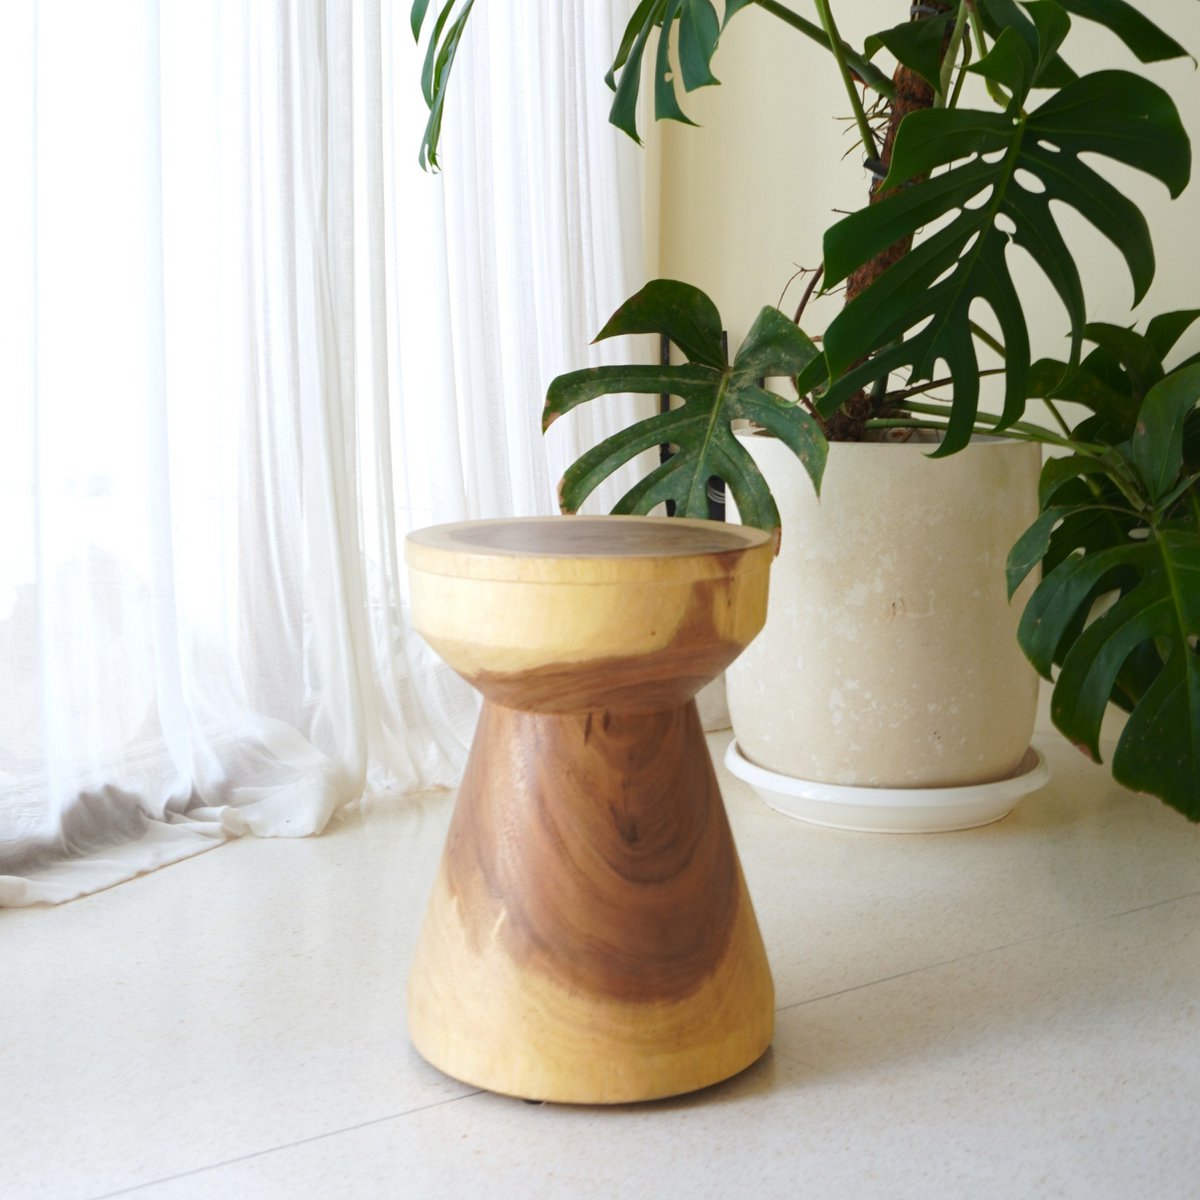 Table d'appoint ronde en bois massif Ø30 cm MANADO Petite table en bois d'arbre à pluie avec grain naturel bicolore